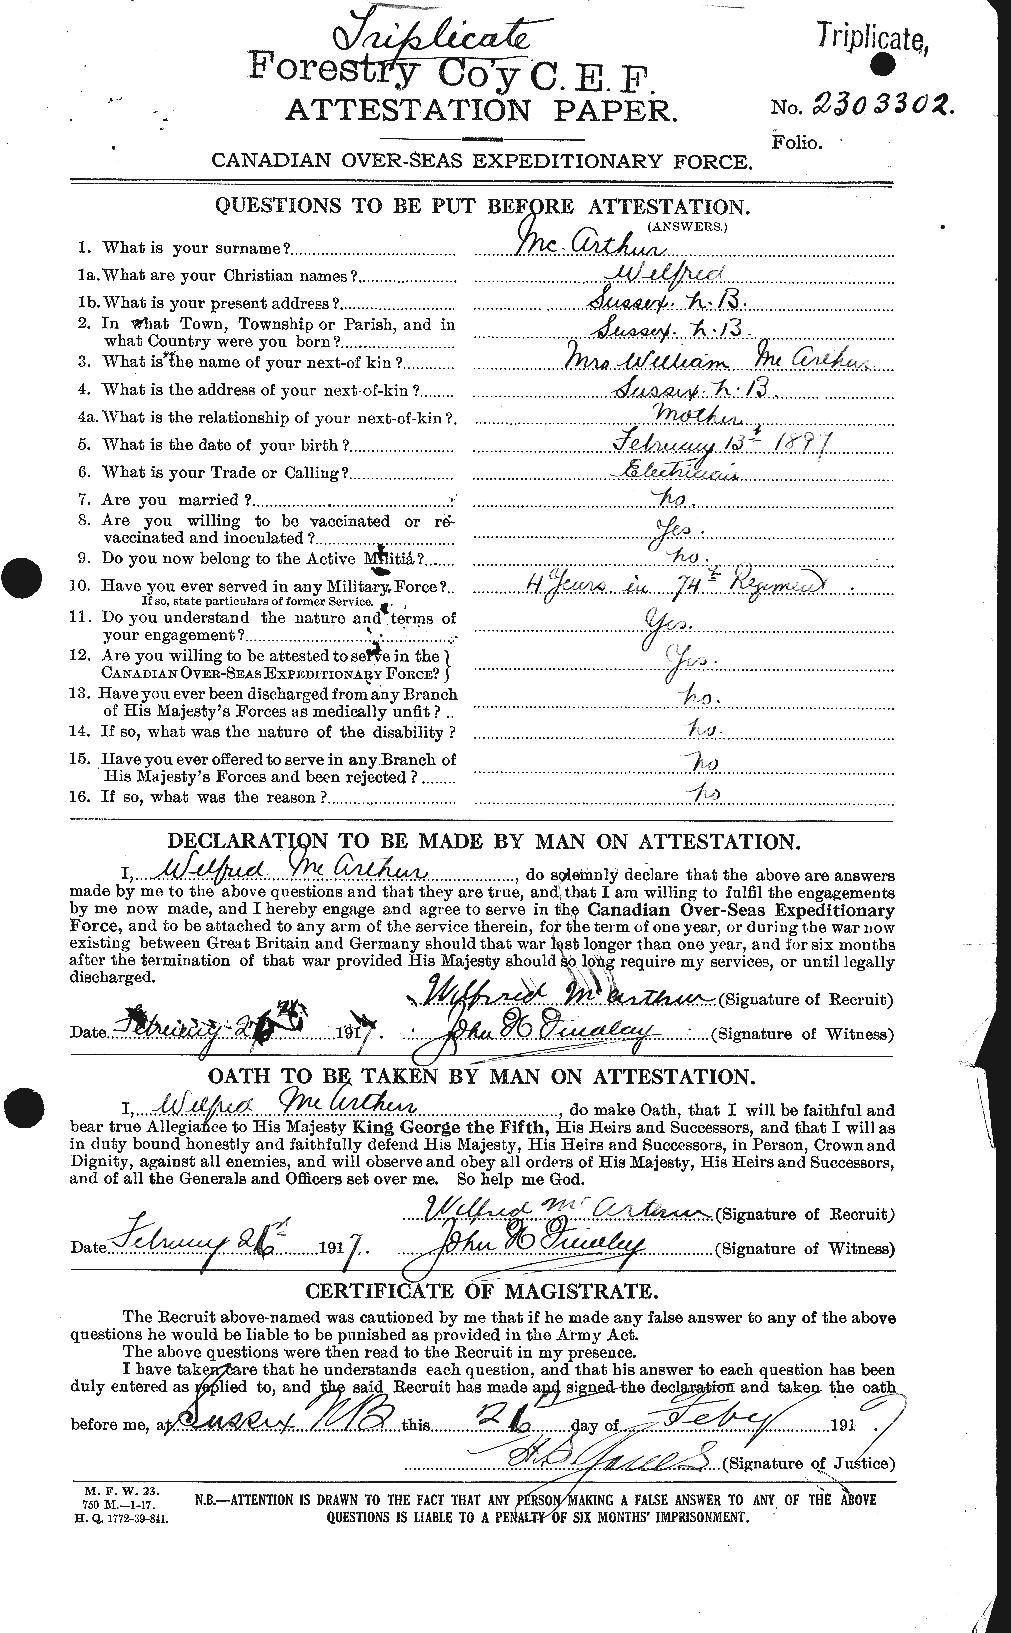 Dossiers du Personnel de la Première Guerre mondiale - CEC 130627a